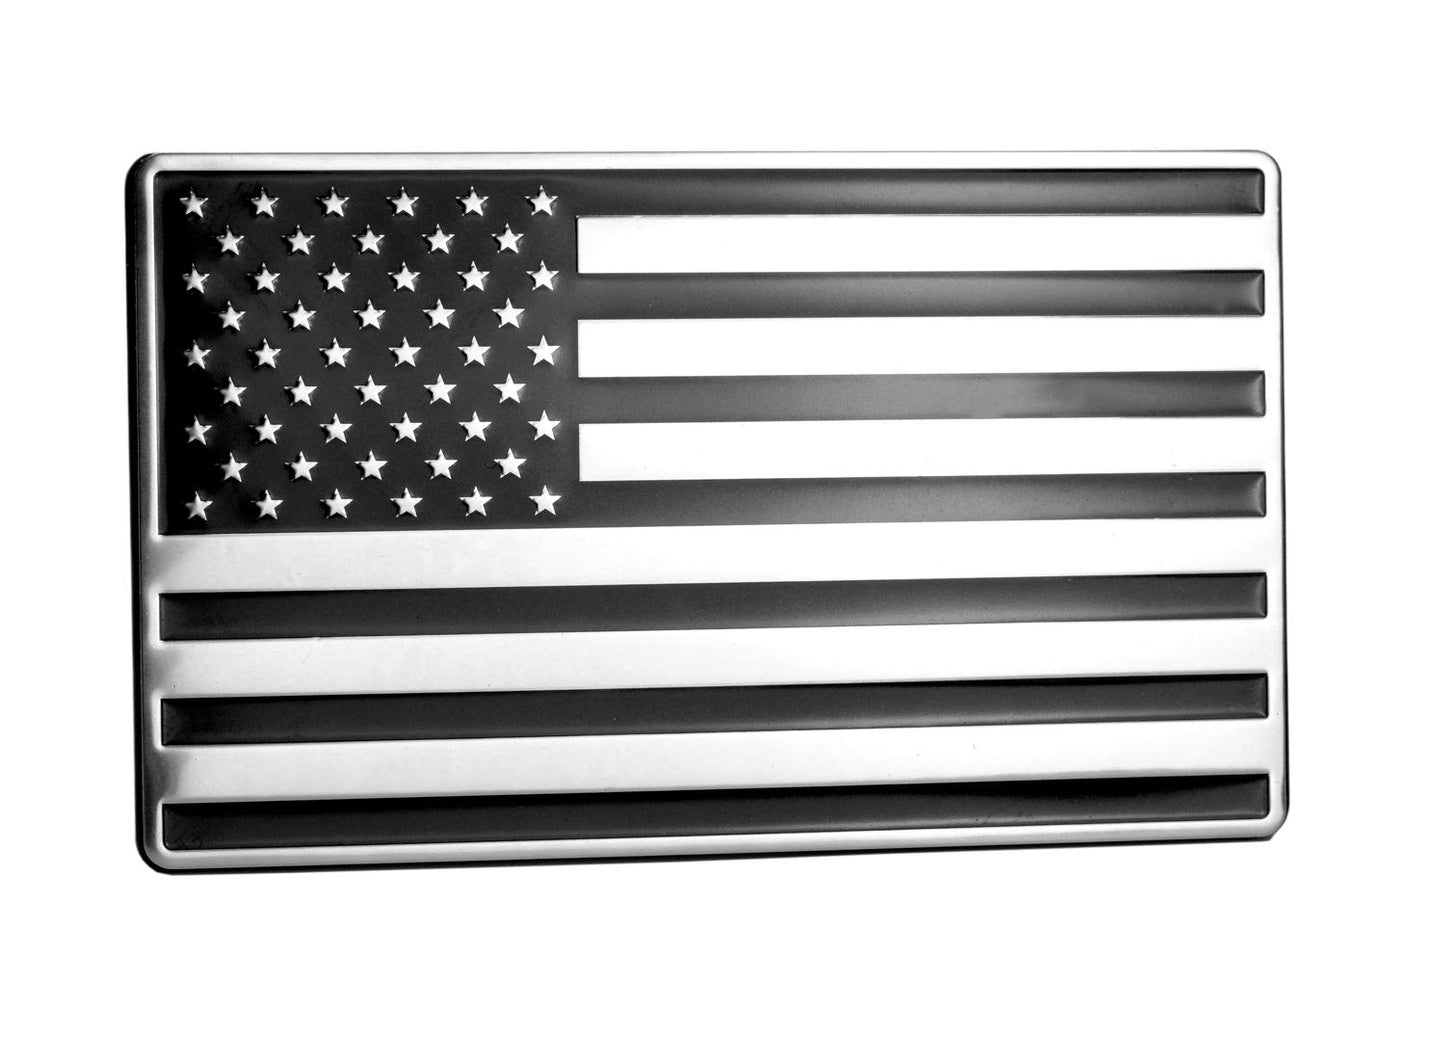 USA Black/Chrome Metal Flag Emblem for Cars, Trucks 5"x 3" 1pcs